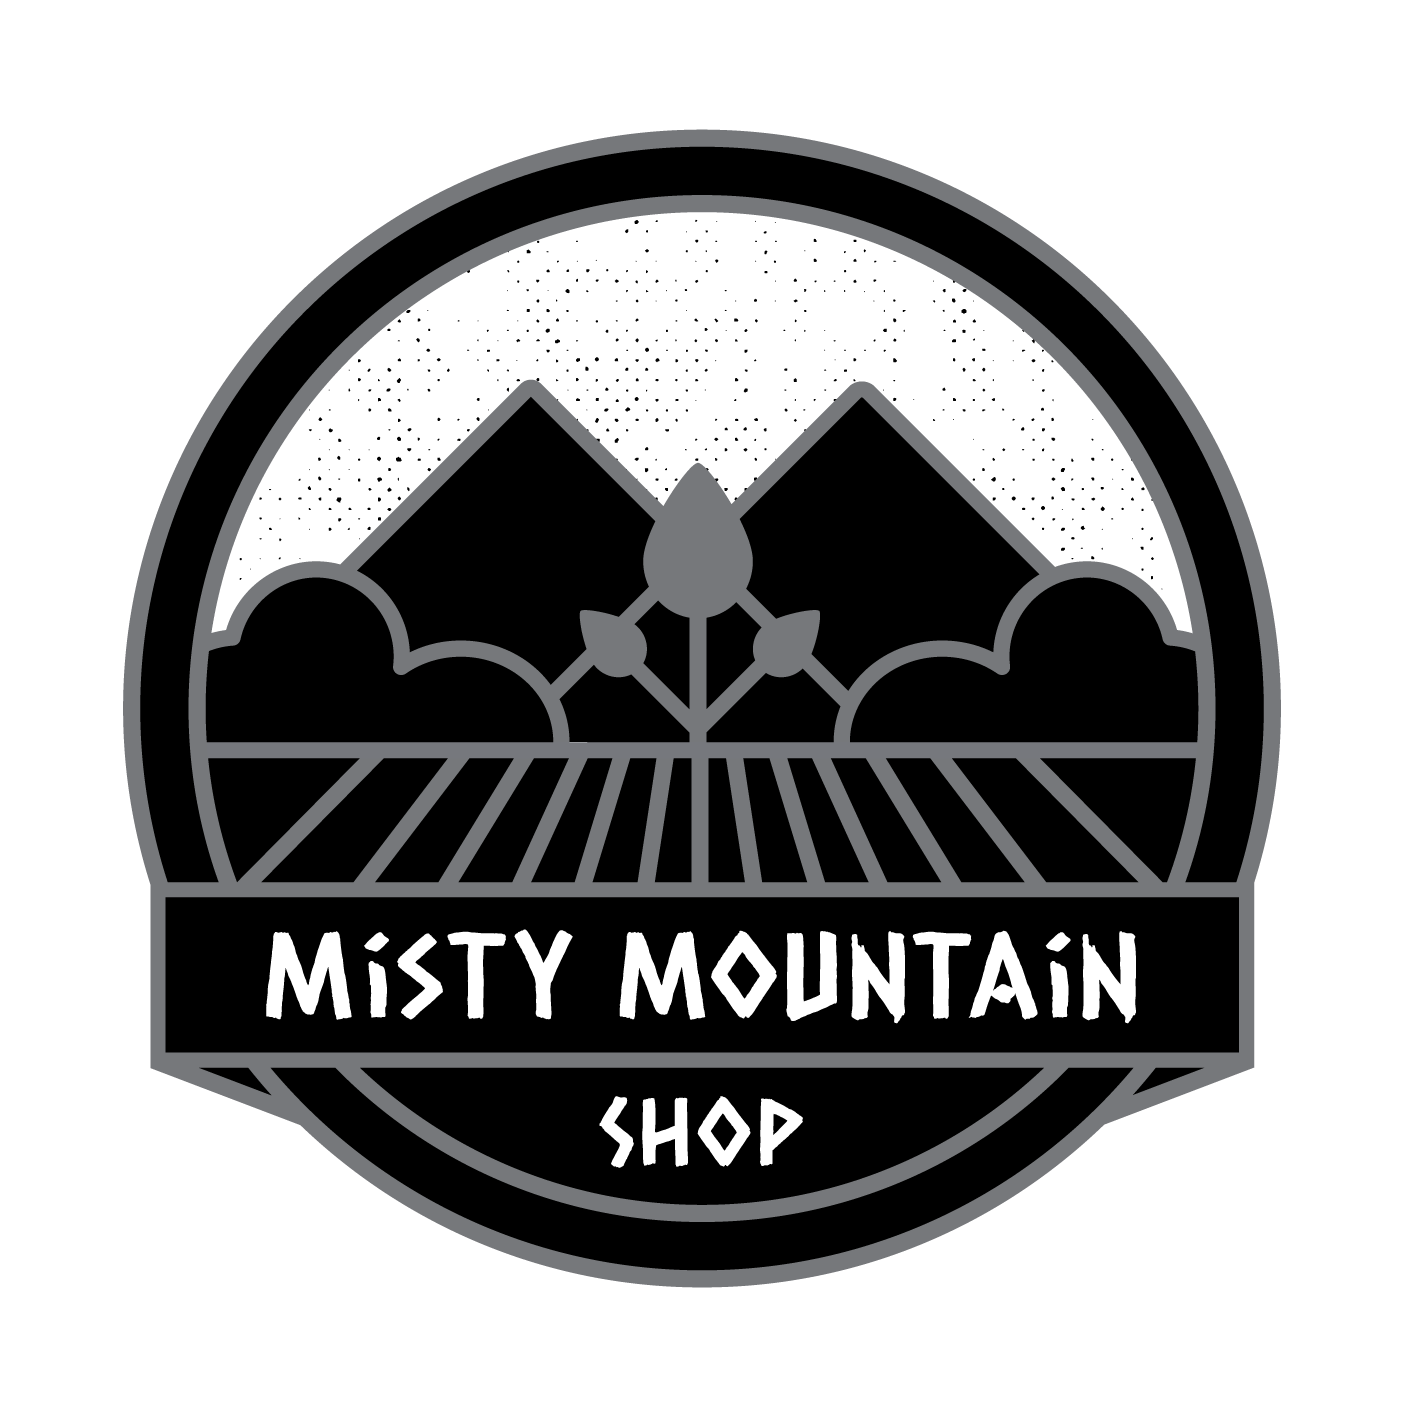 Misty Mountain Shop - Cannabis Dispensary